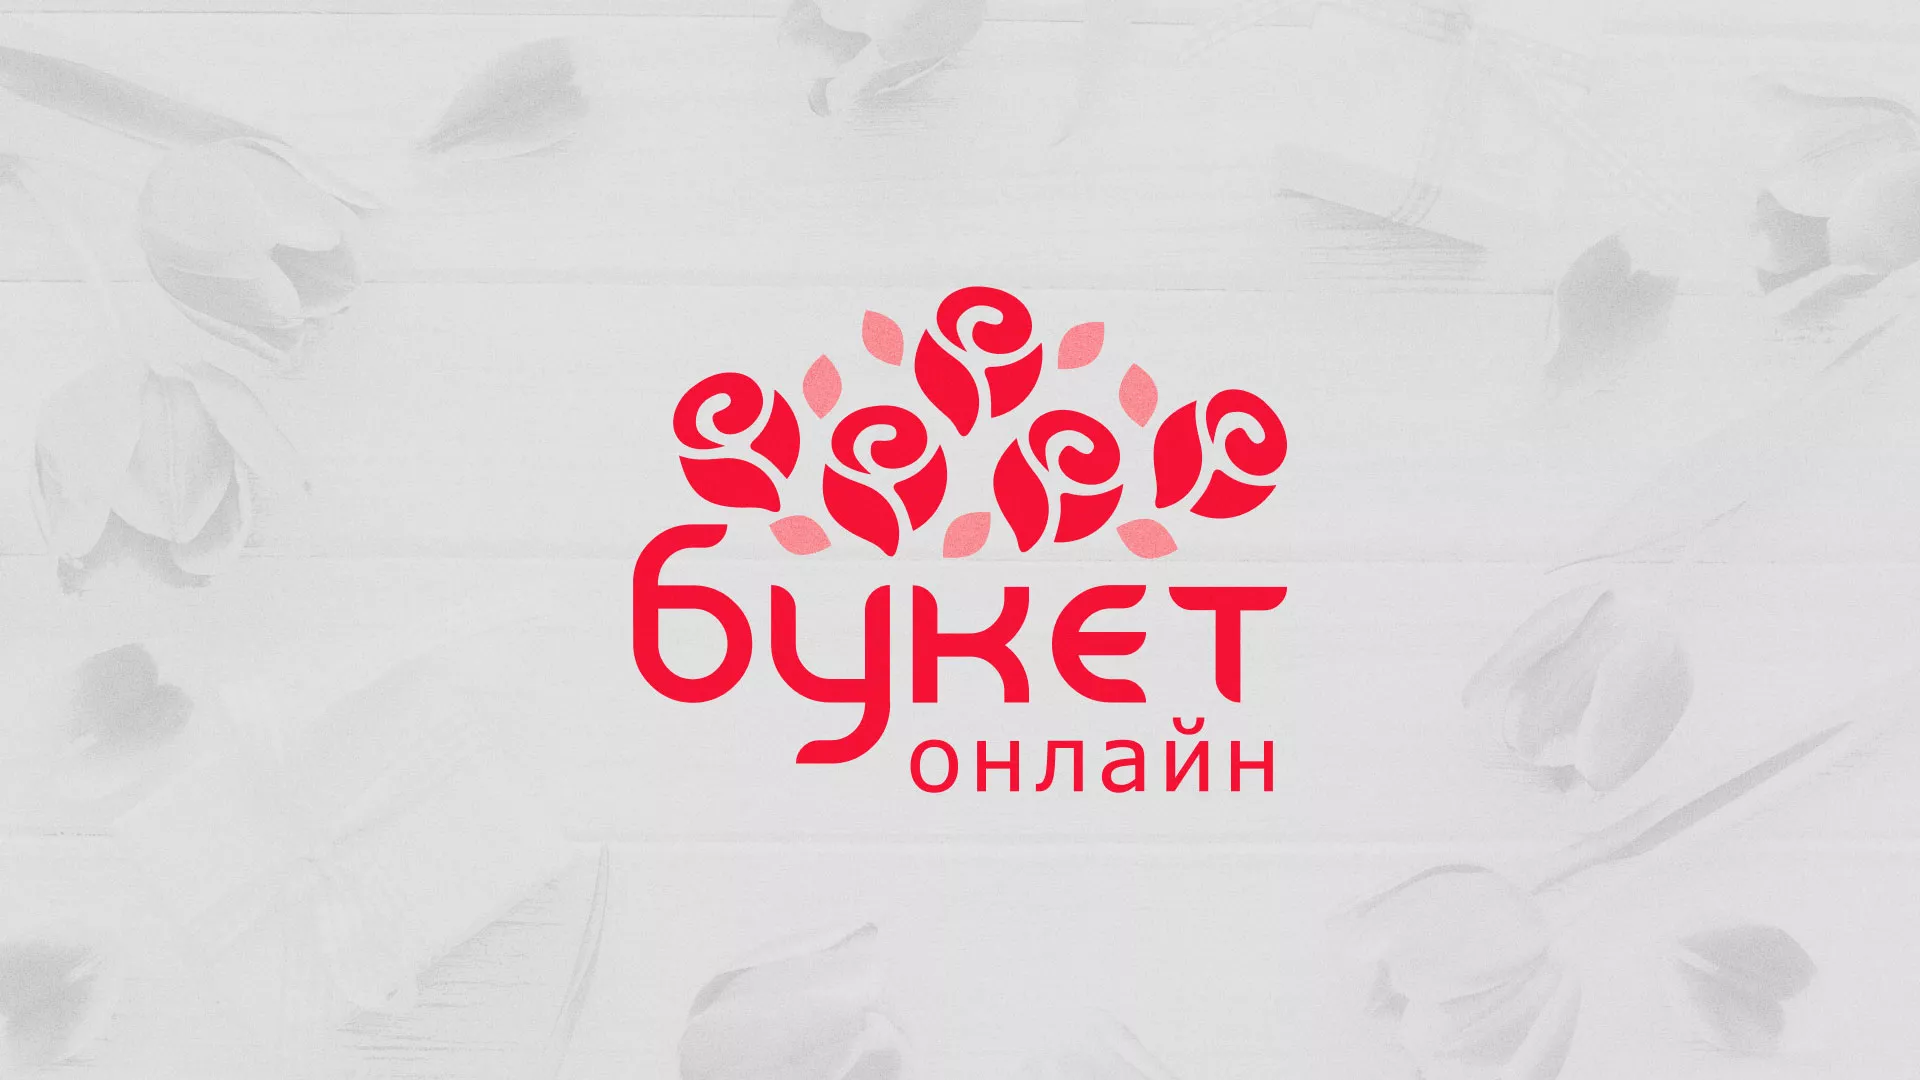 Создание интернет-магазина «Букет-онлайн» по цветам в Беломорске